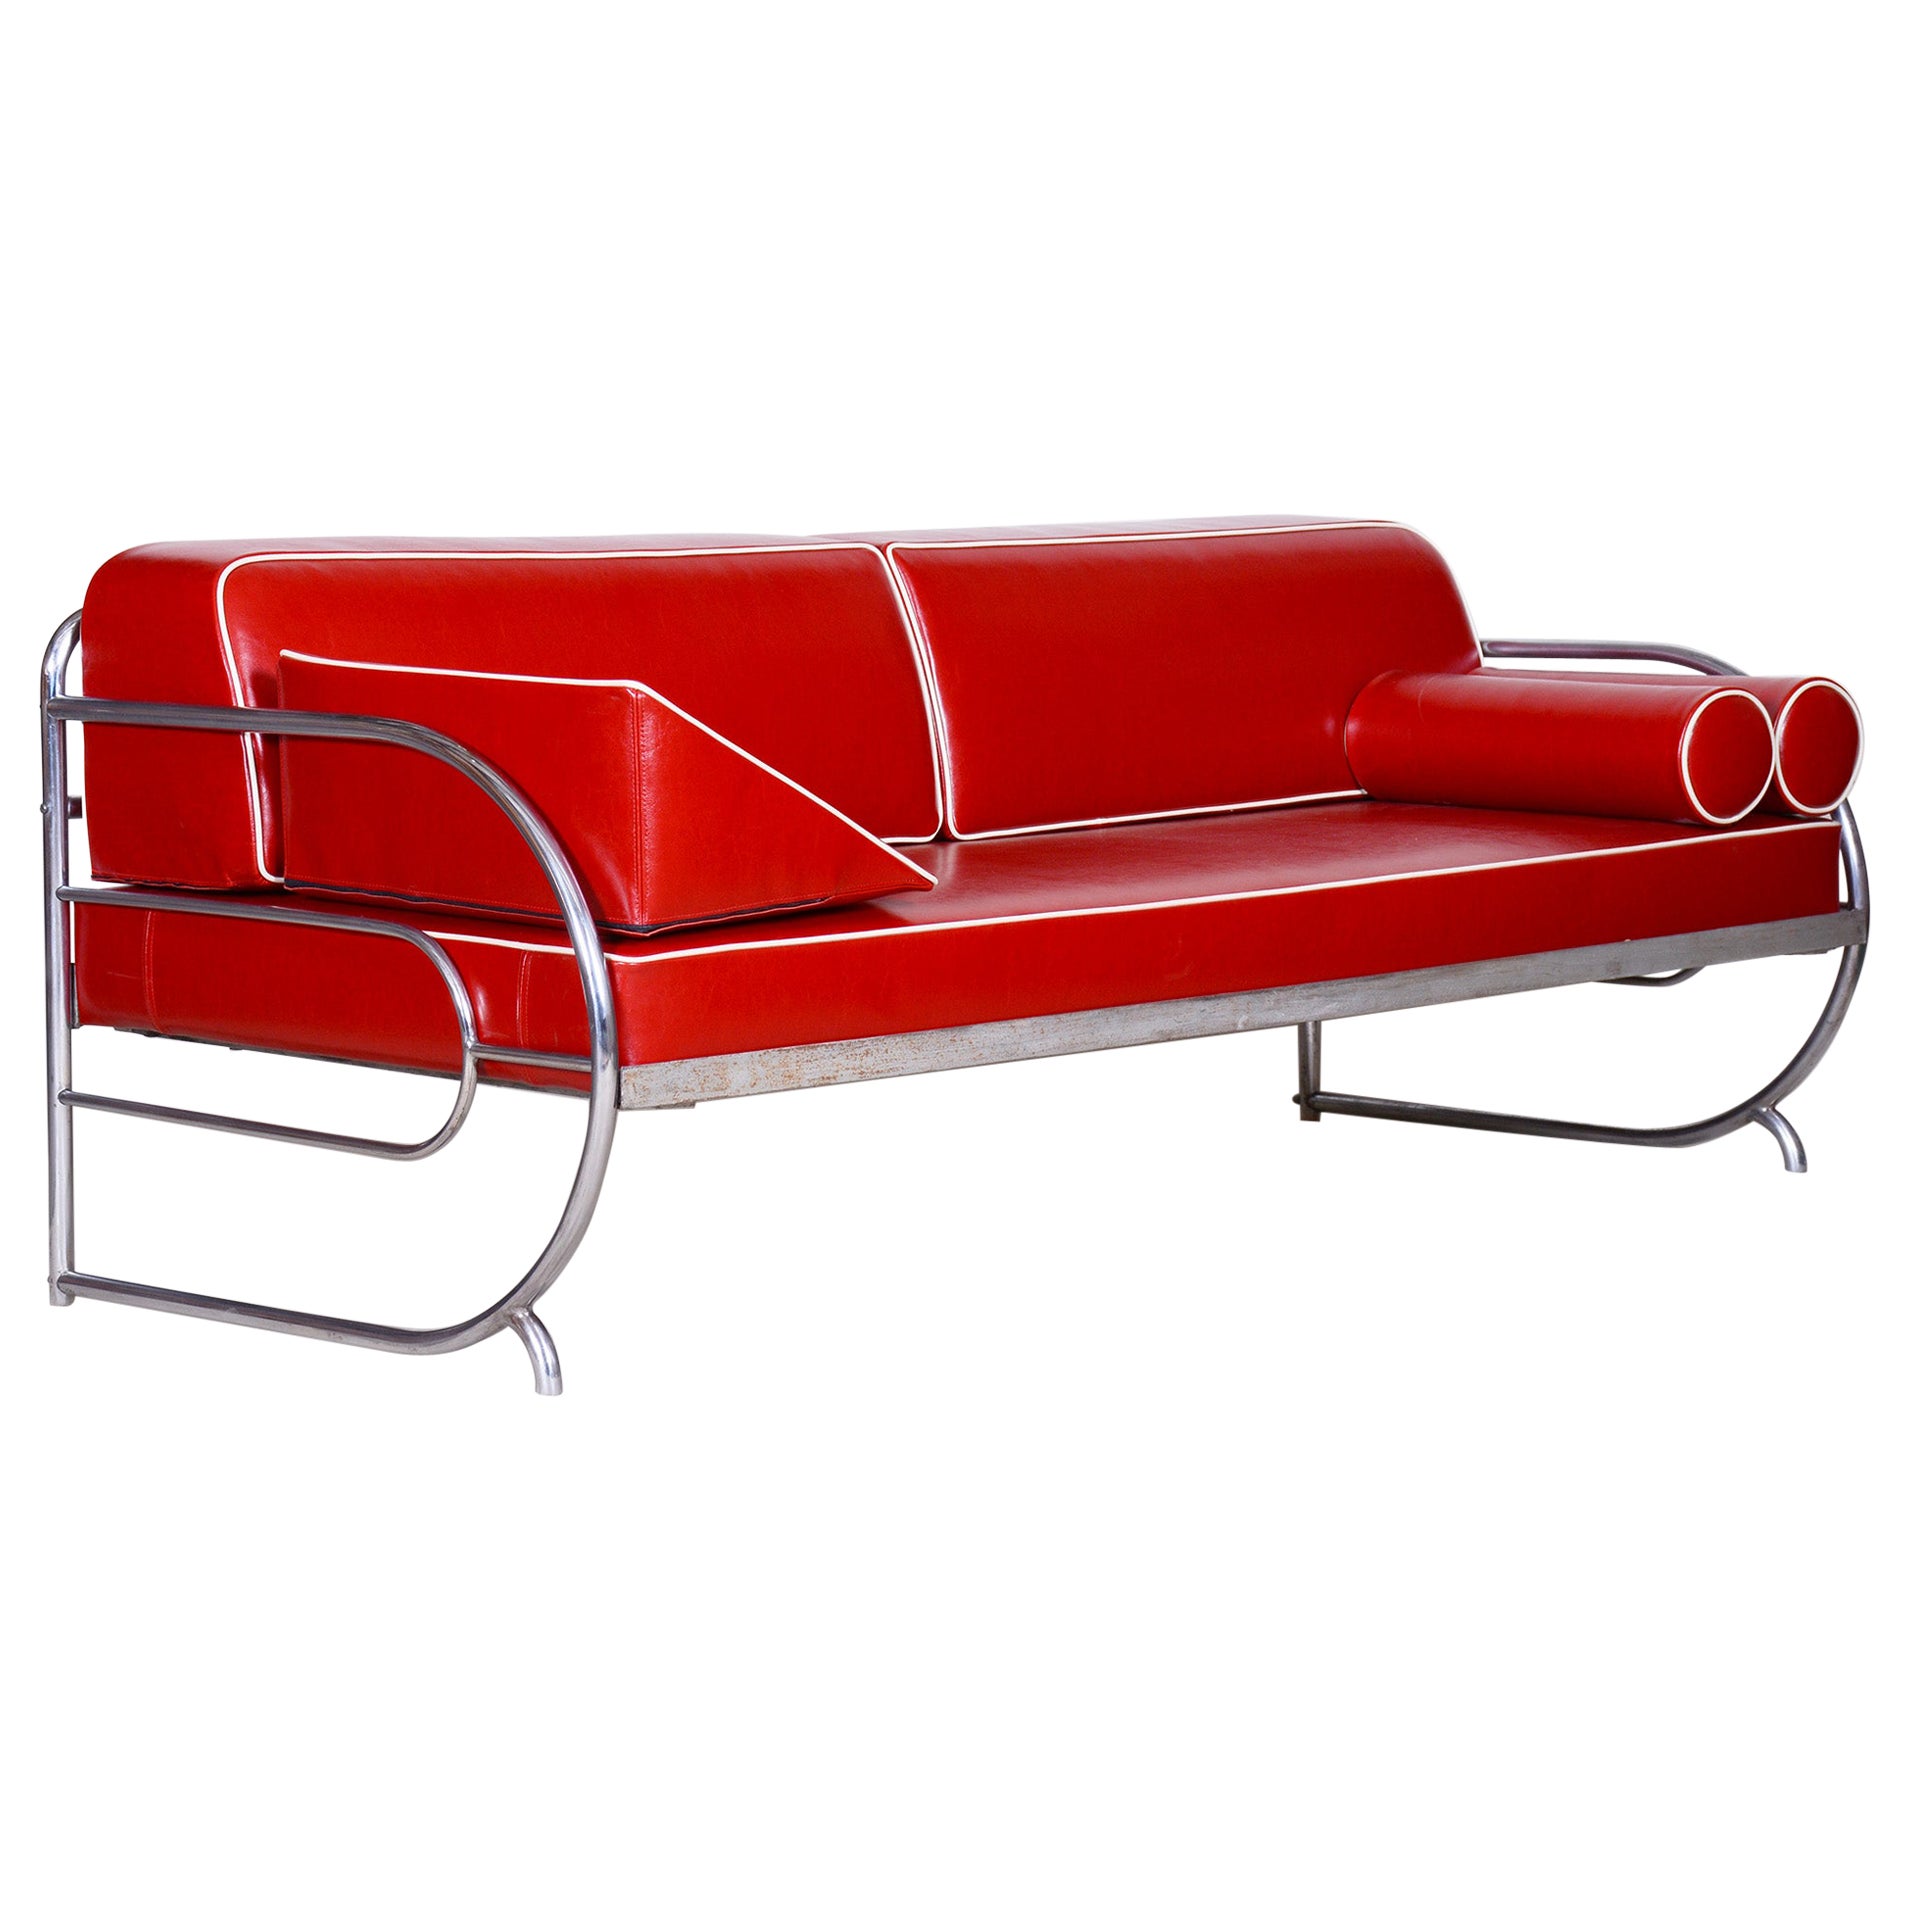 Restauriertes Bauhaus-Sofa von Robert Slezak, hochwertiges Leder, Chrom, 1930er Jahre